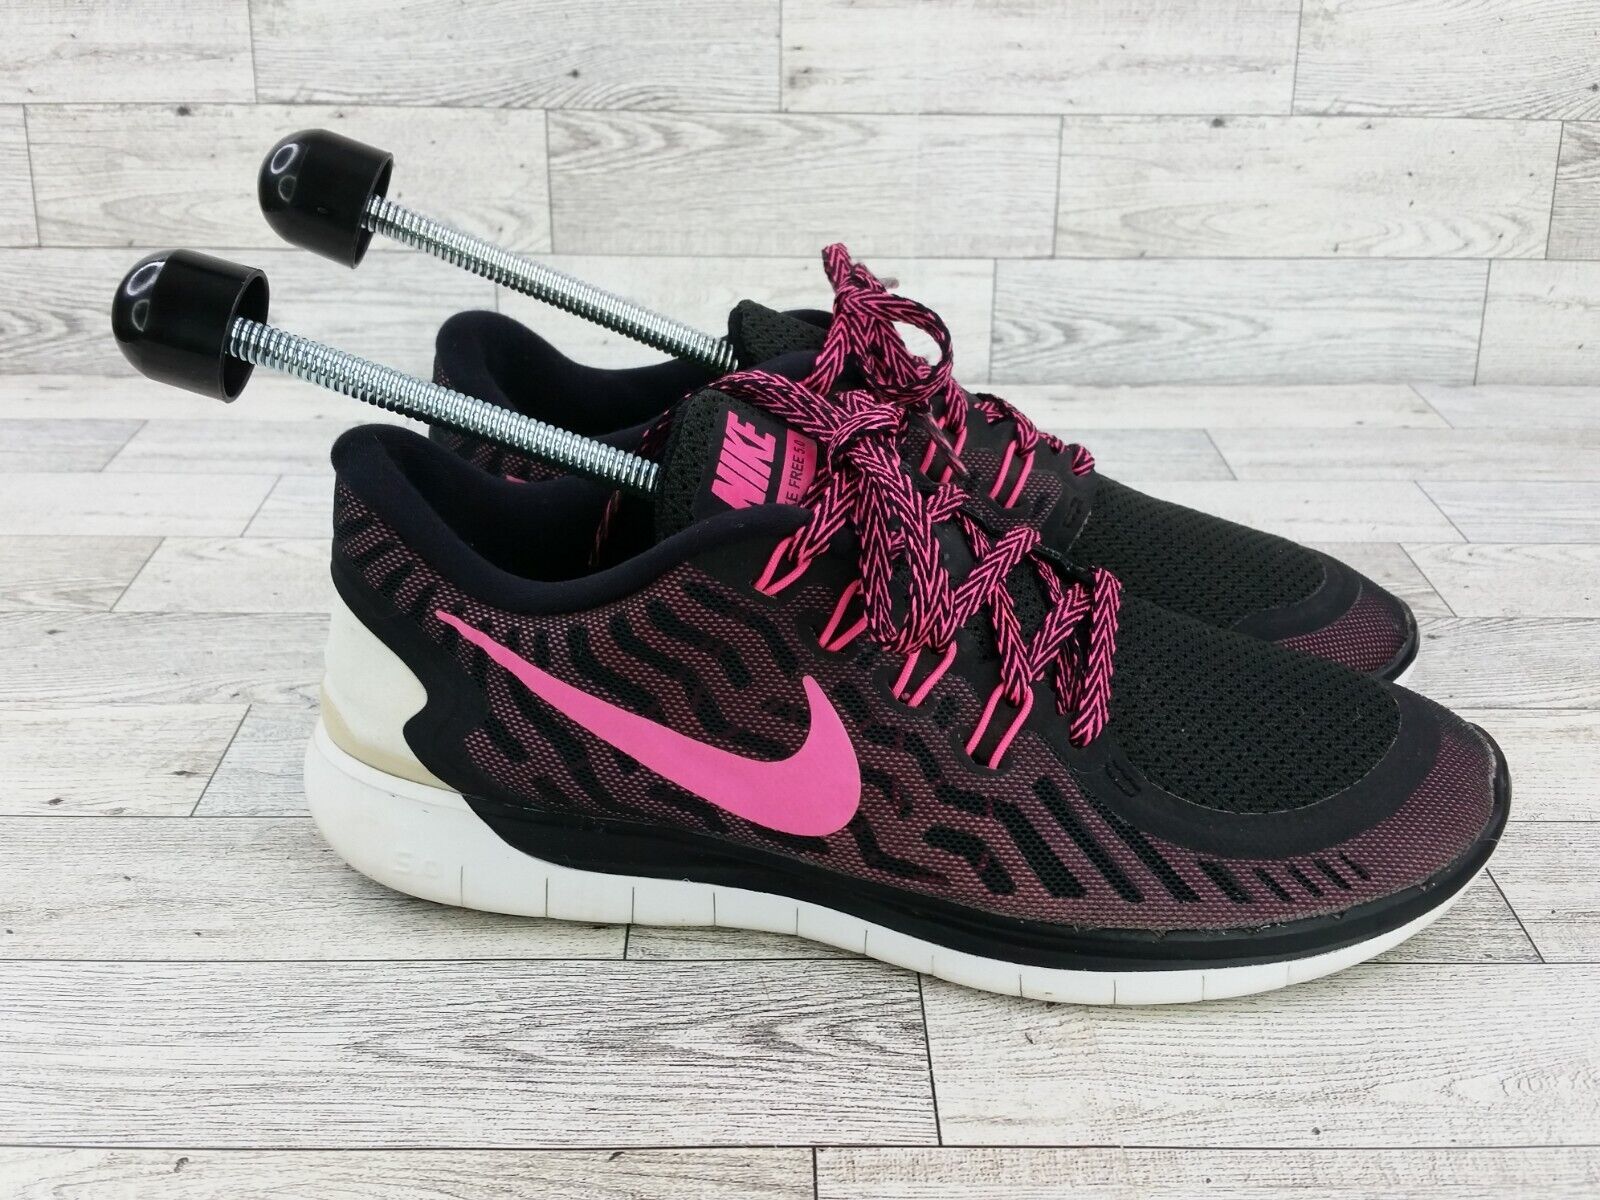 Nike Free 5.0 Black Pink Running Shoes (724383-006) Size 9 | eBay